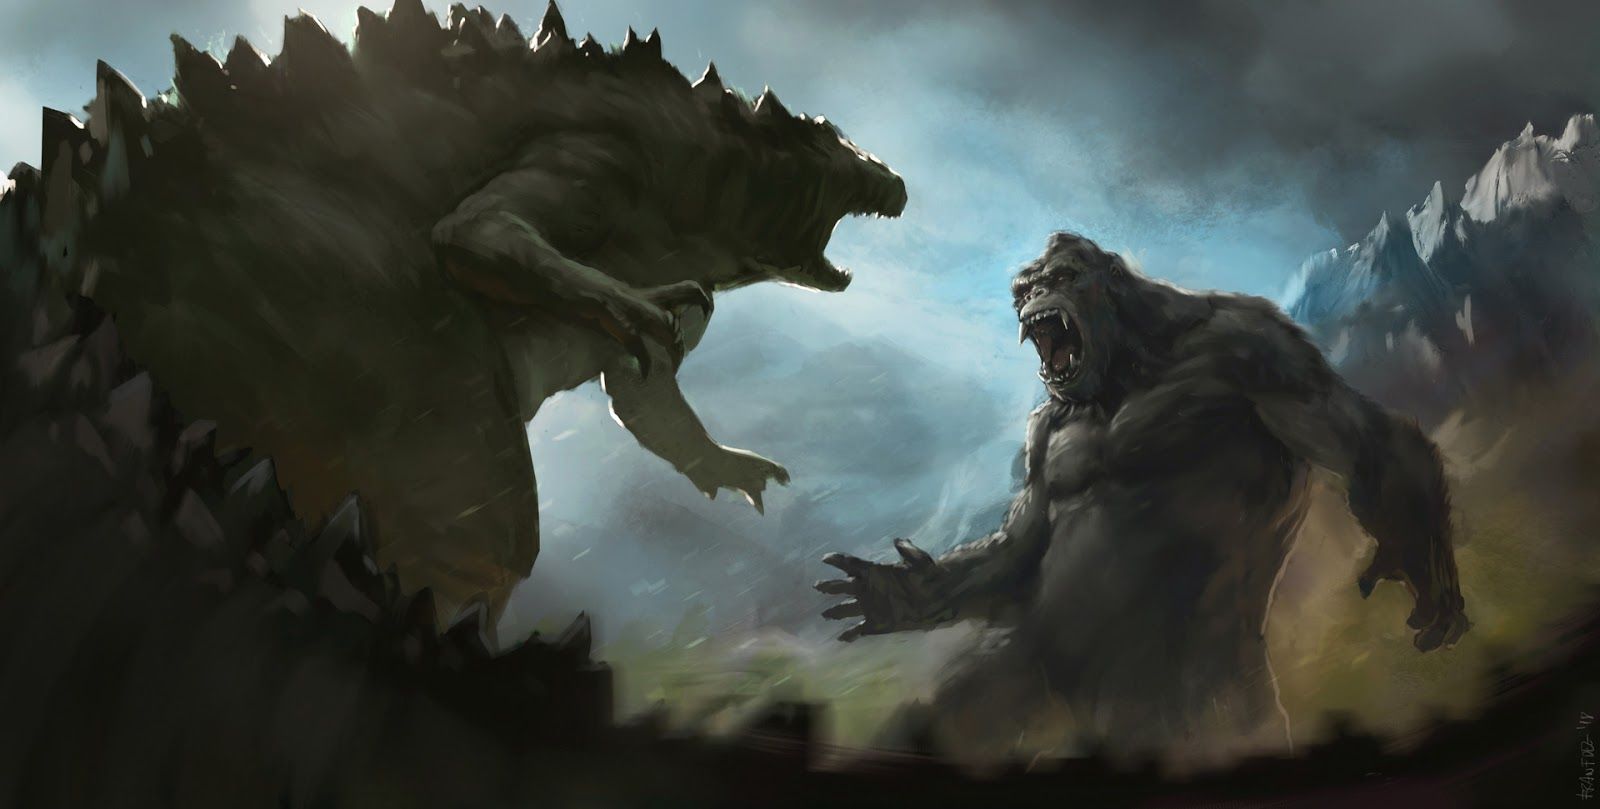 Godzilla vs. Kong's Trailer May Tease a Team-Up Between the Two Kaiju